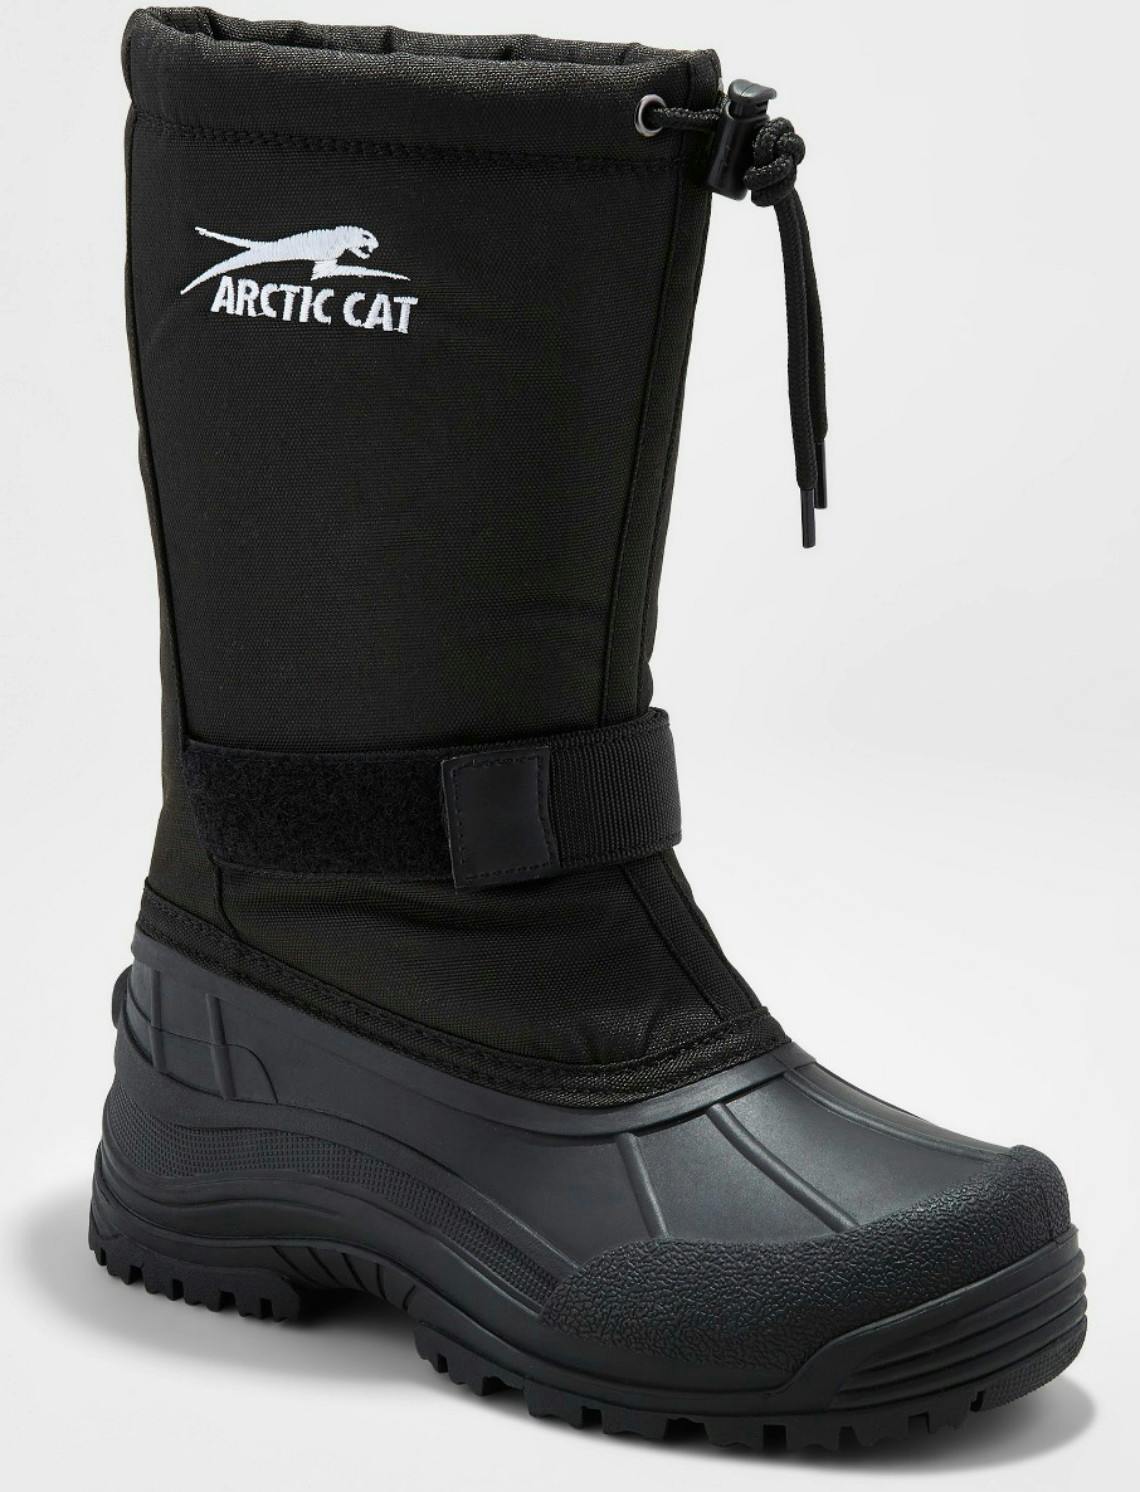 arctic cat womens boots